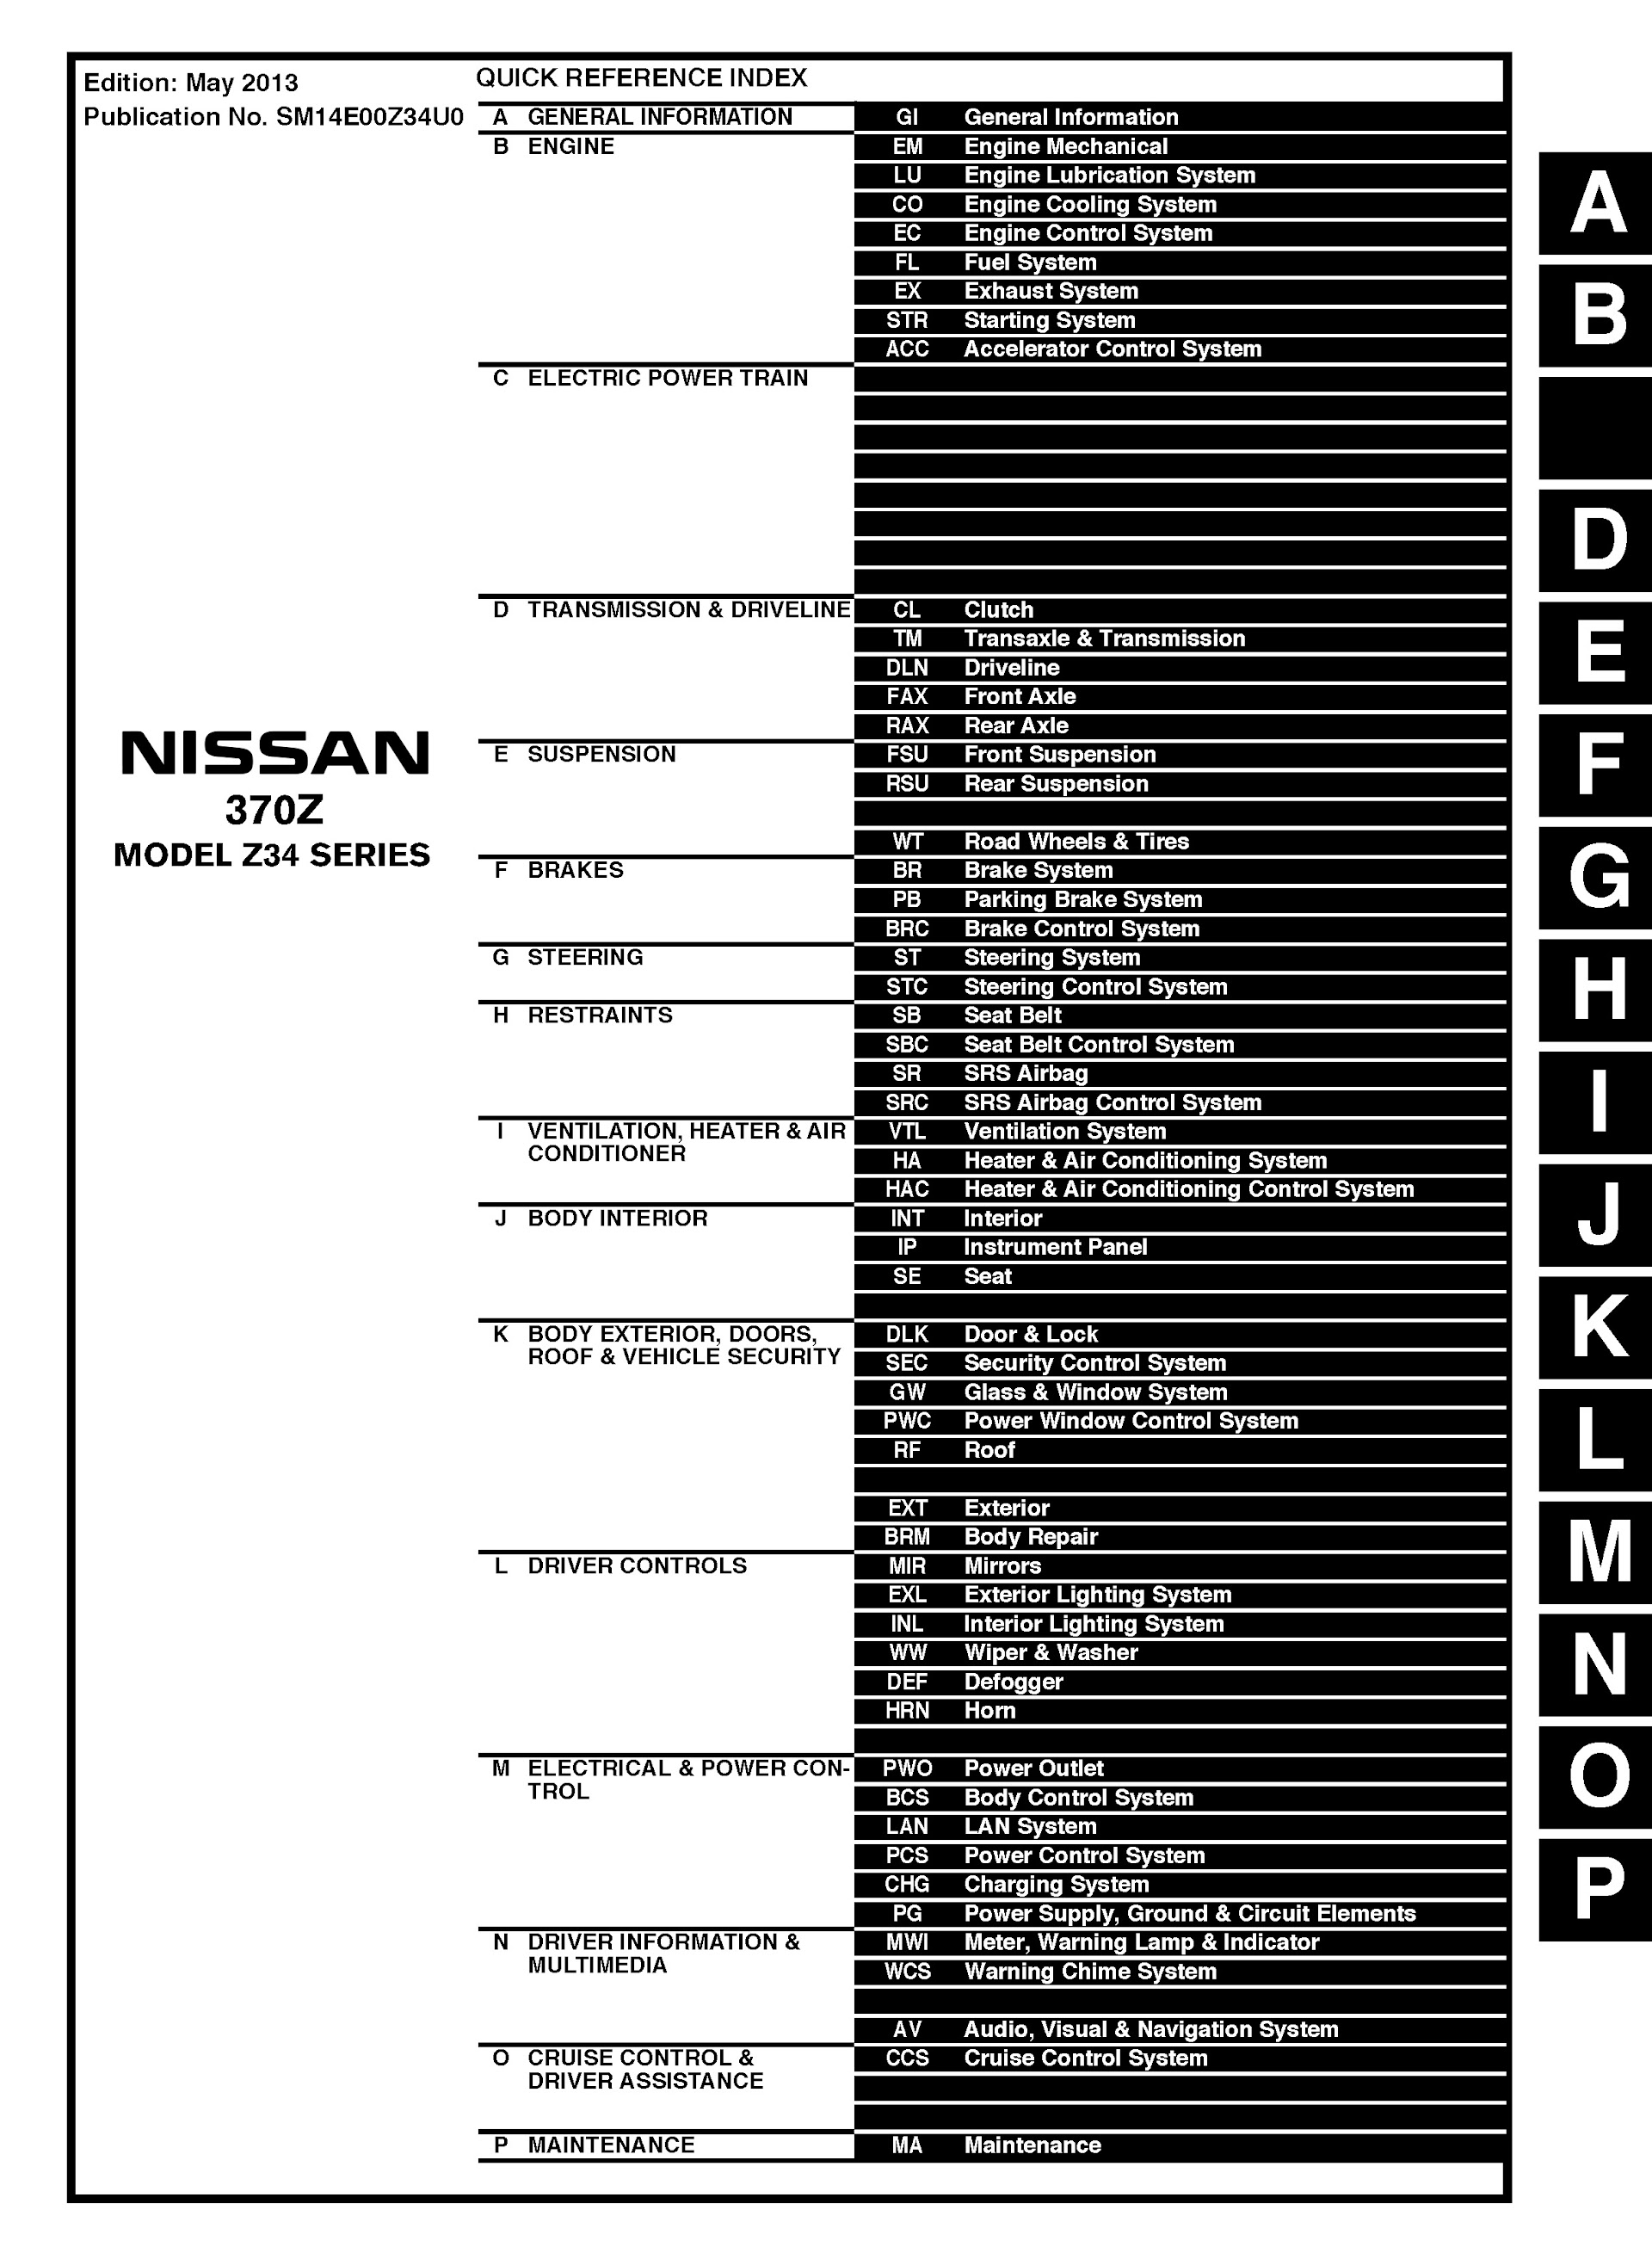 CONTENTS: 2014 Nissan 370Z Repair Manual